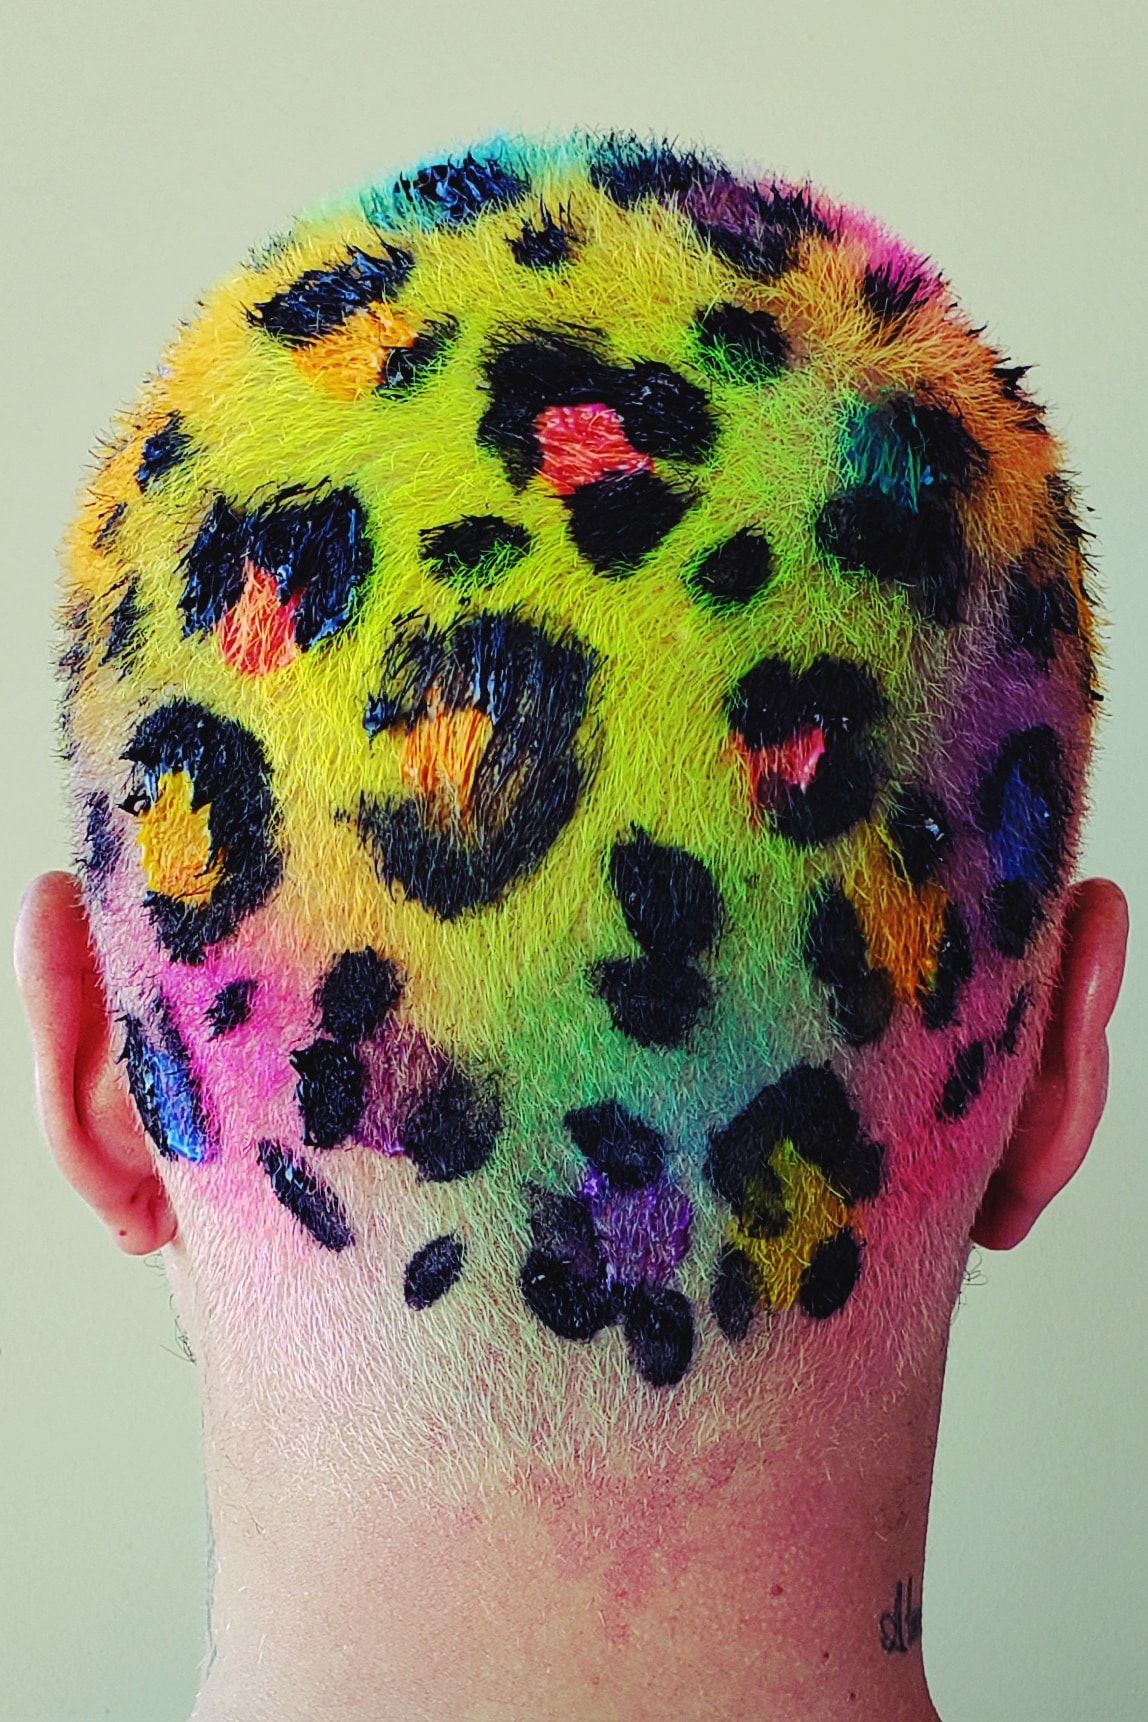 「头发有点像指纹，是每个人独特的象征」| 专访发型艺术家 Janine Ker 